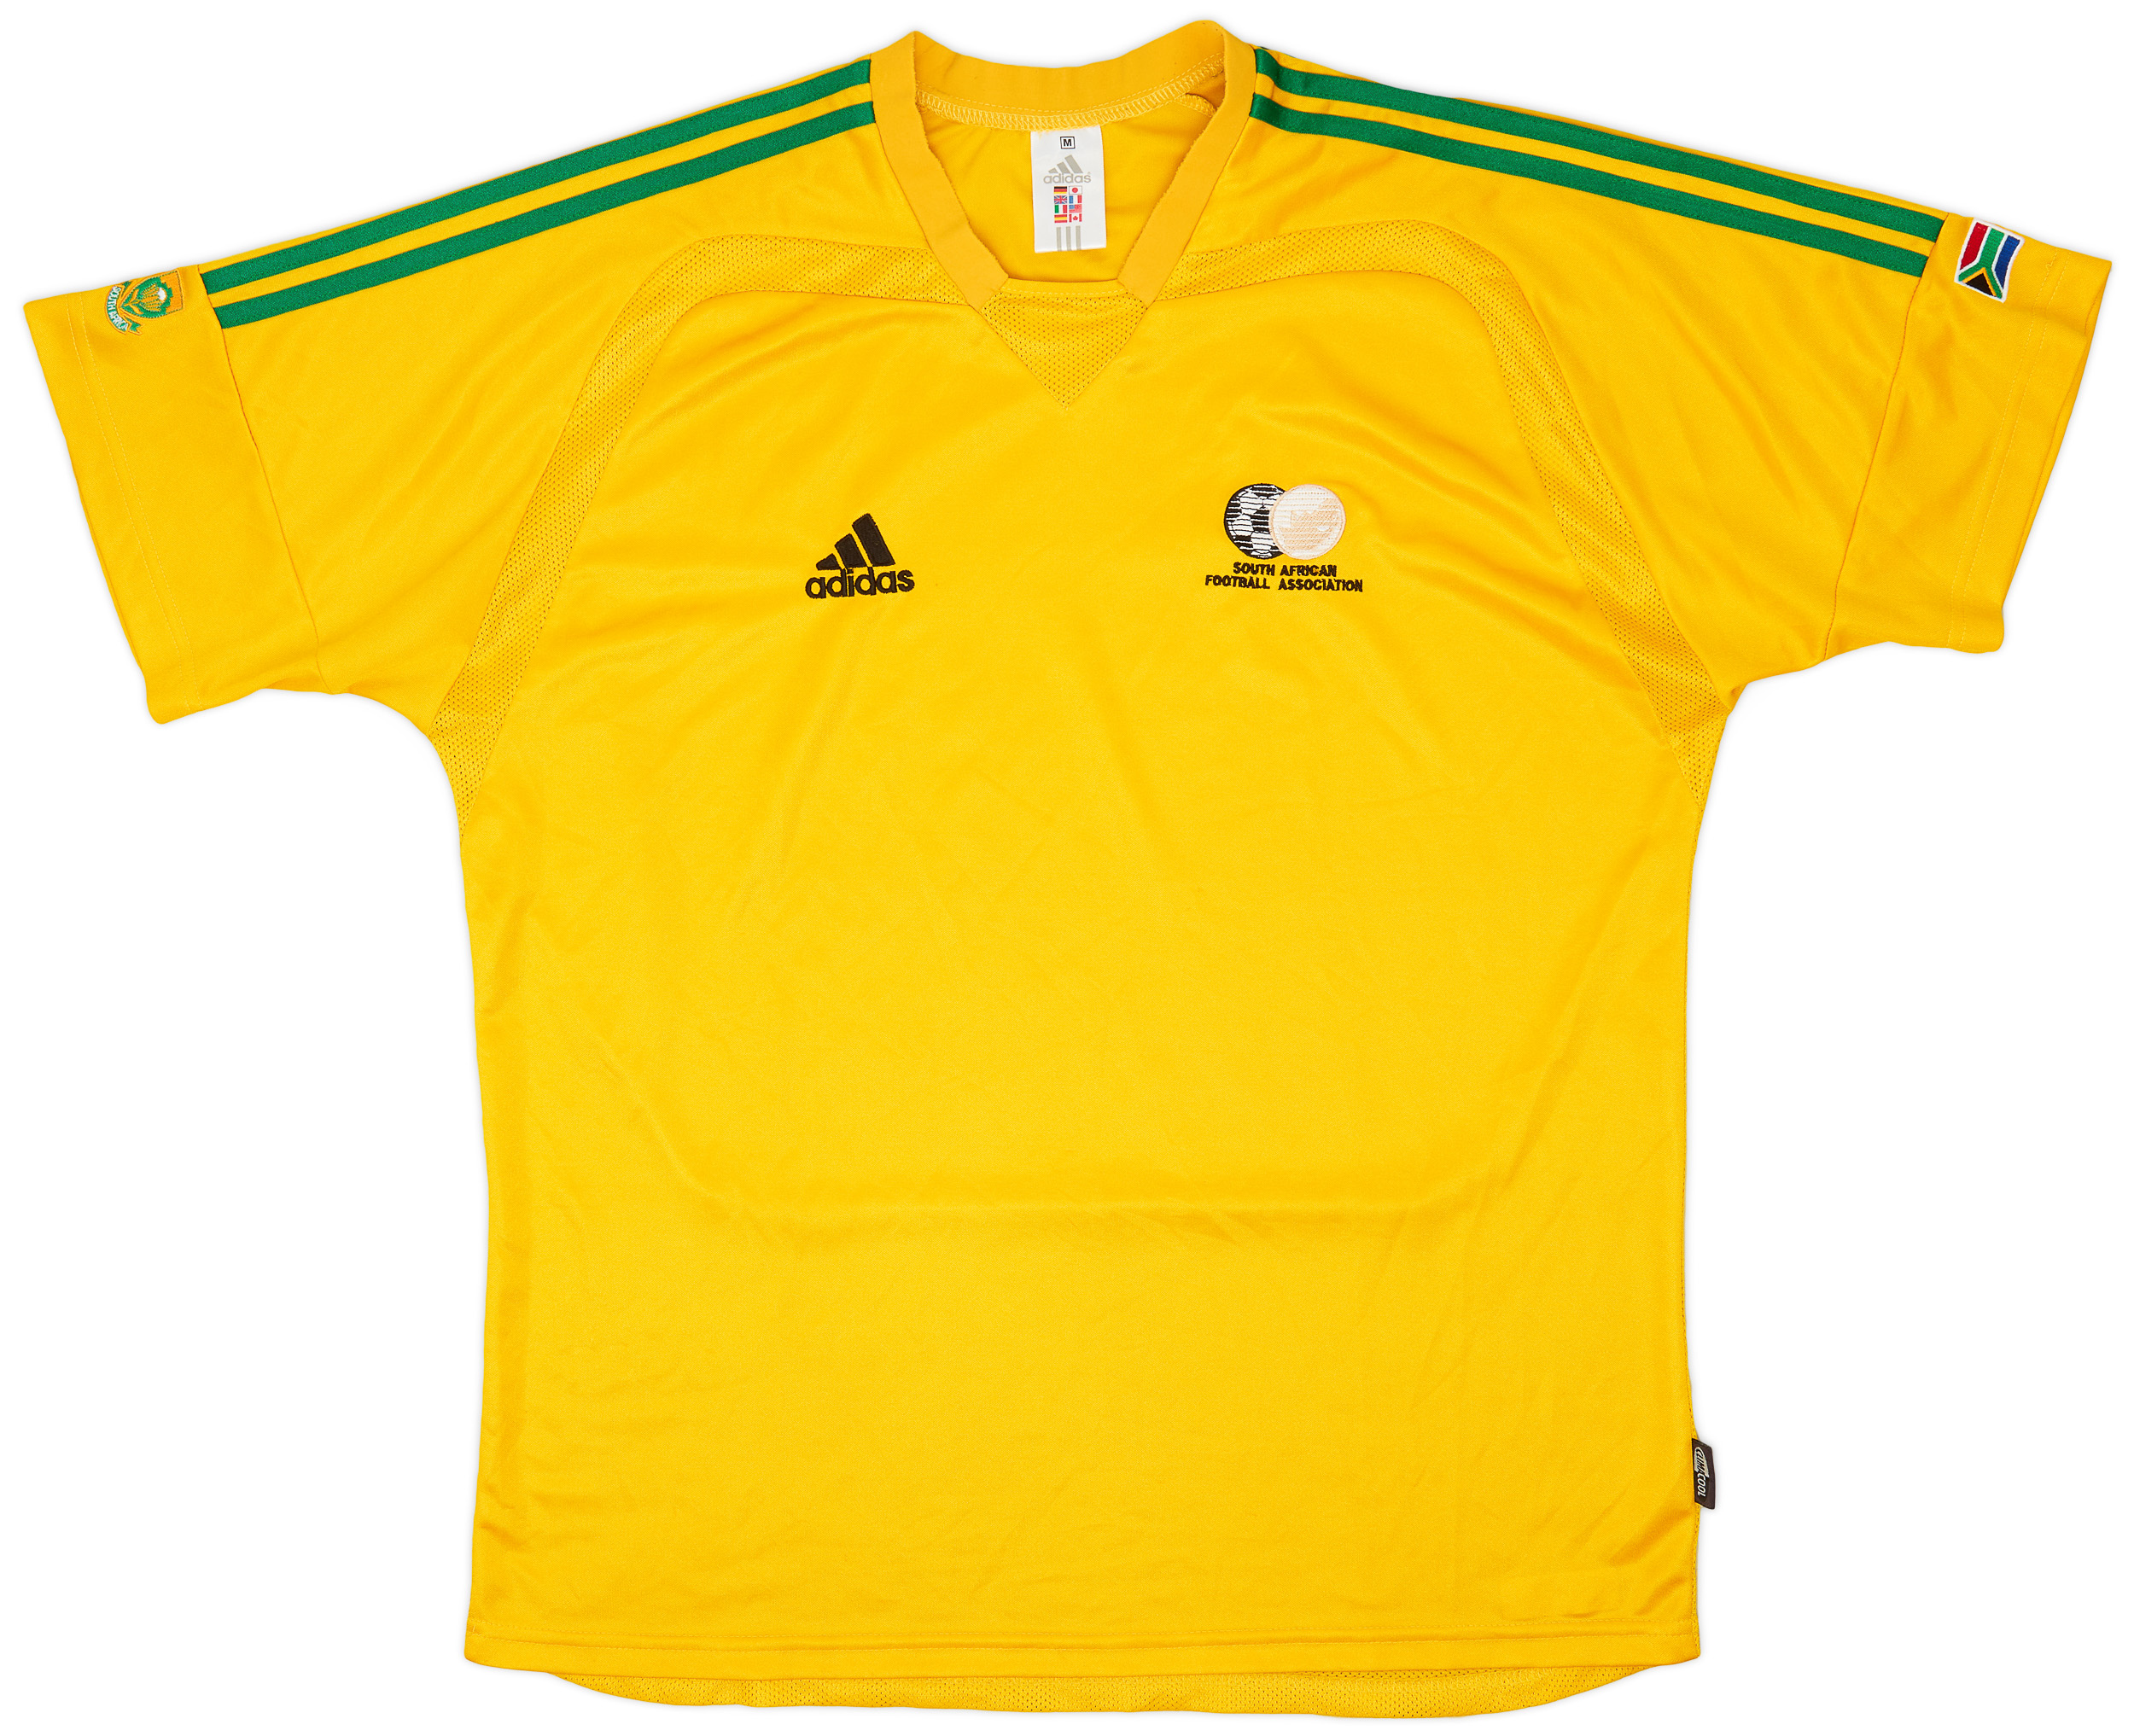 South Africa  home shirt  (Original)